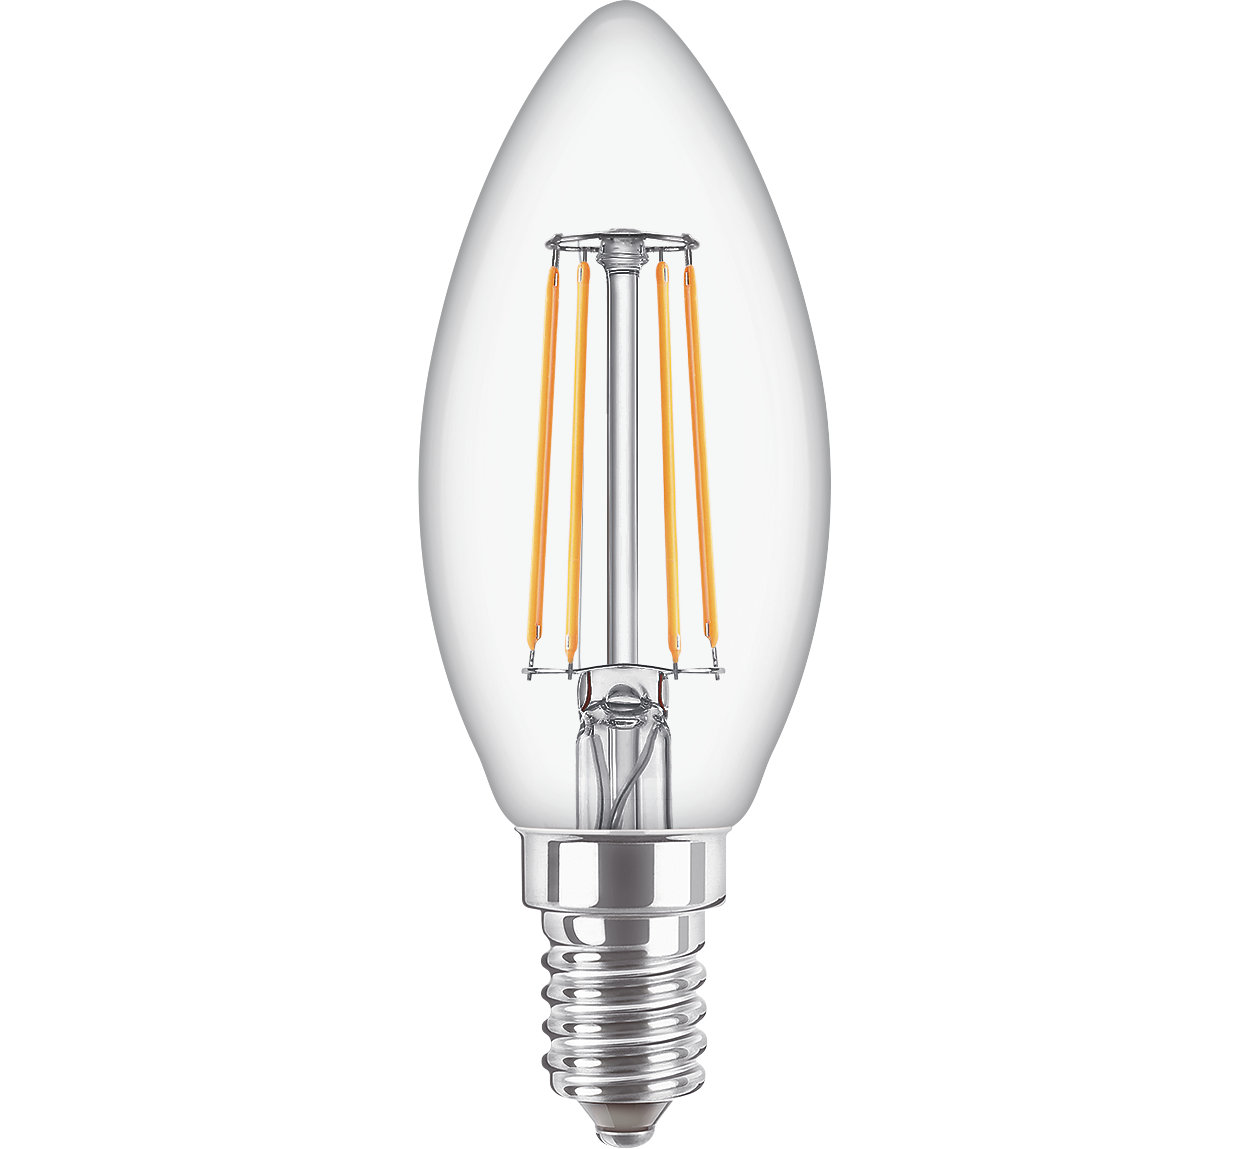 De LED-kaarslamp combineert de klassieke vorm van gloeilampen met de voordelen van duurzame LED-technologie en is geschikt voor dagelijks gebruik